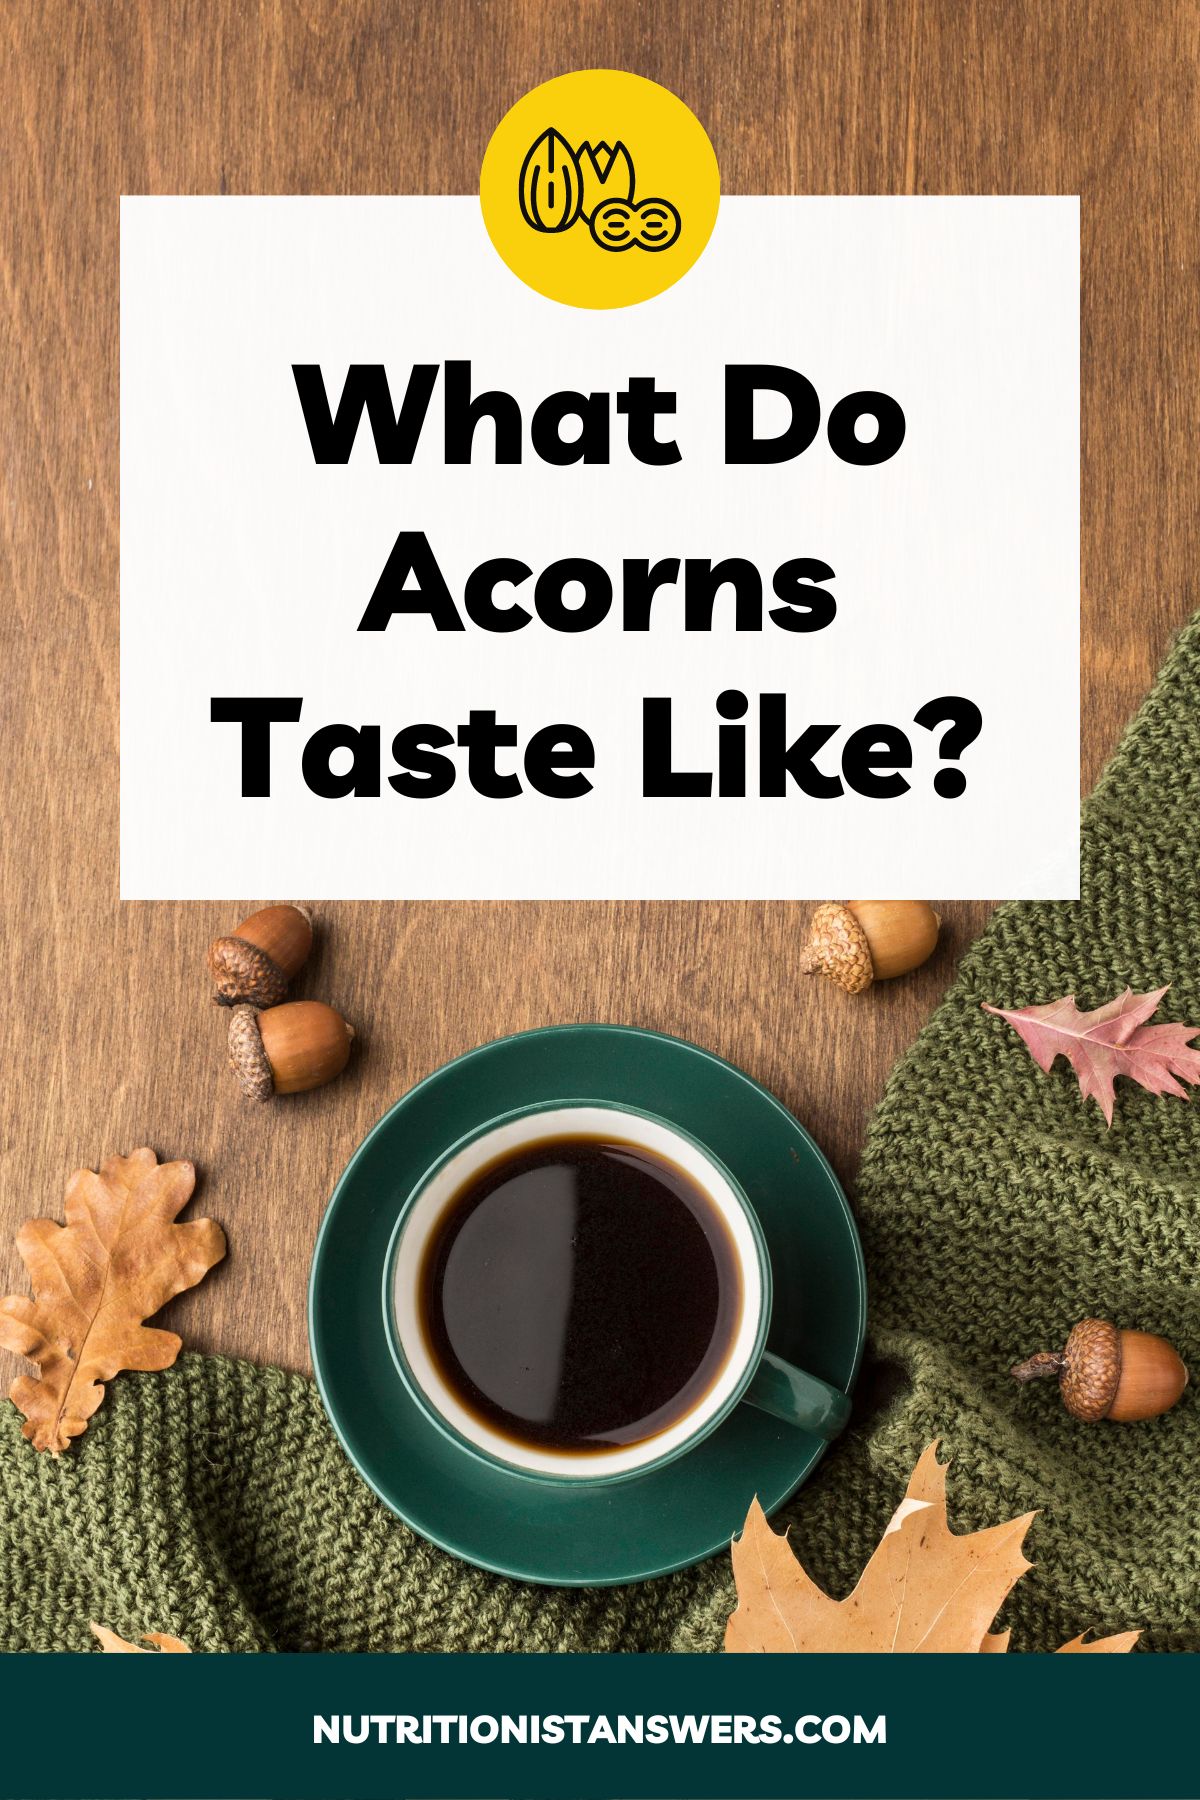 What Do Acorns Taste Like?